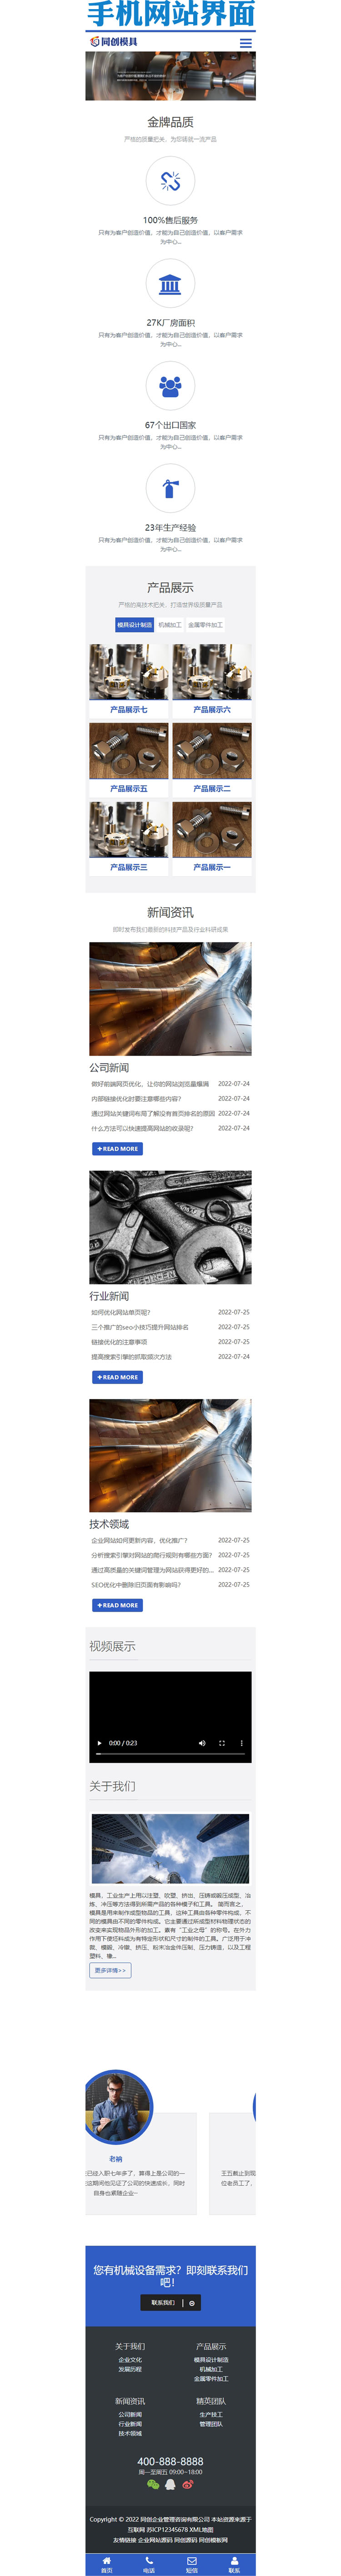 响应式机械零部件设备公司网站模板-XX225-3